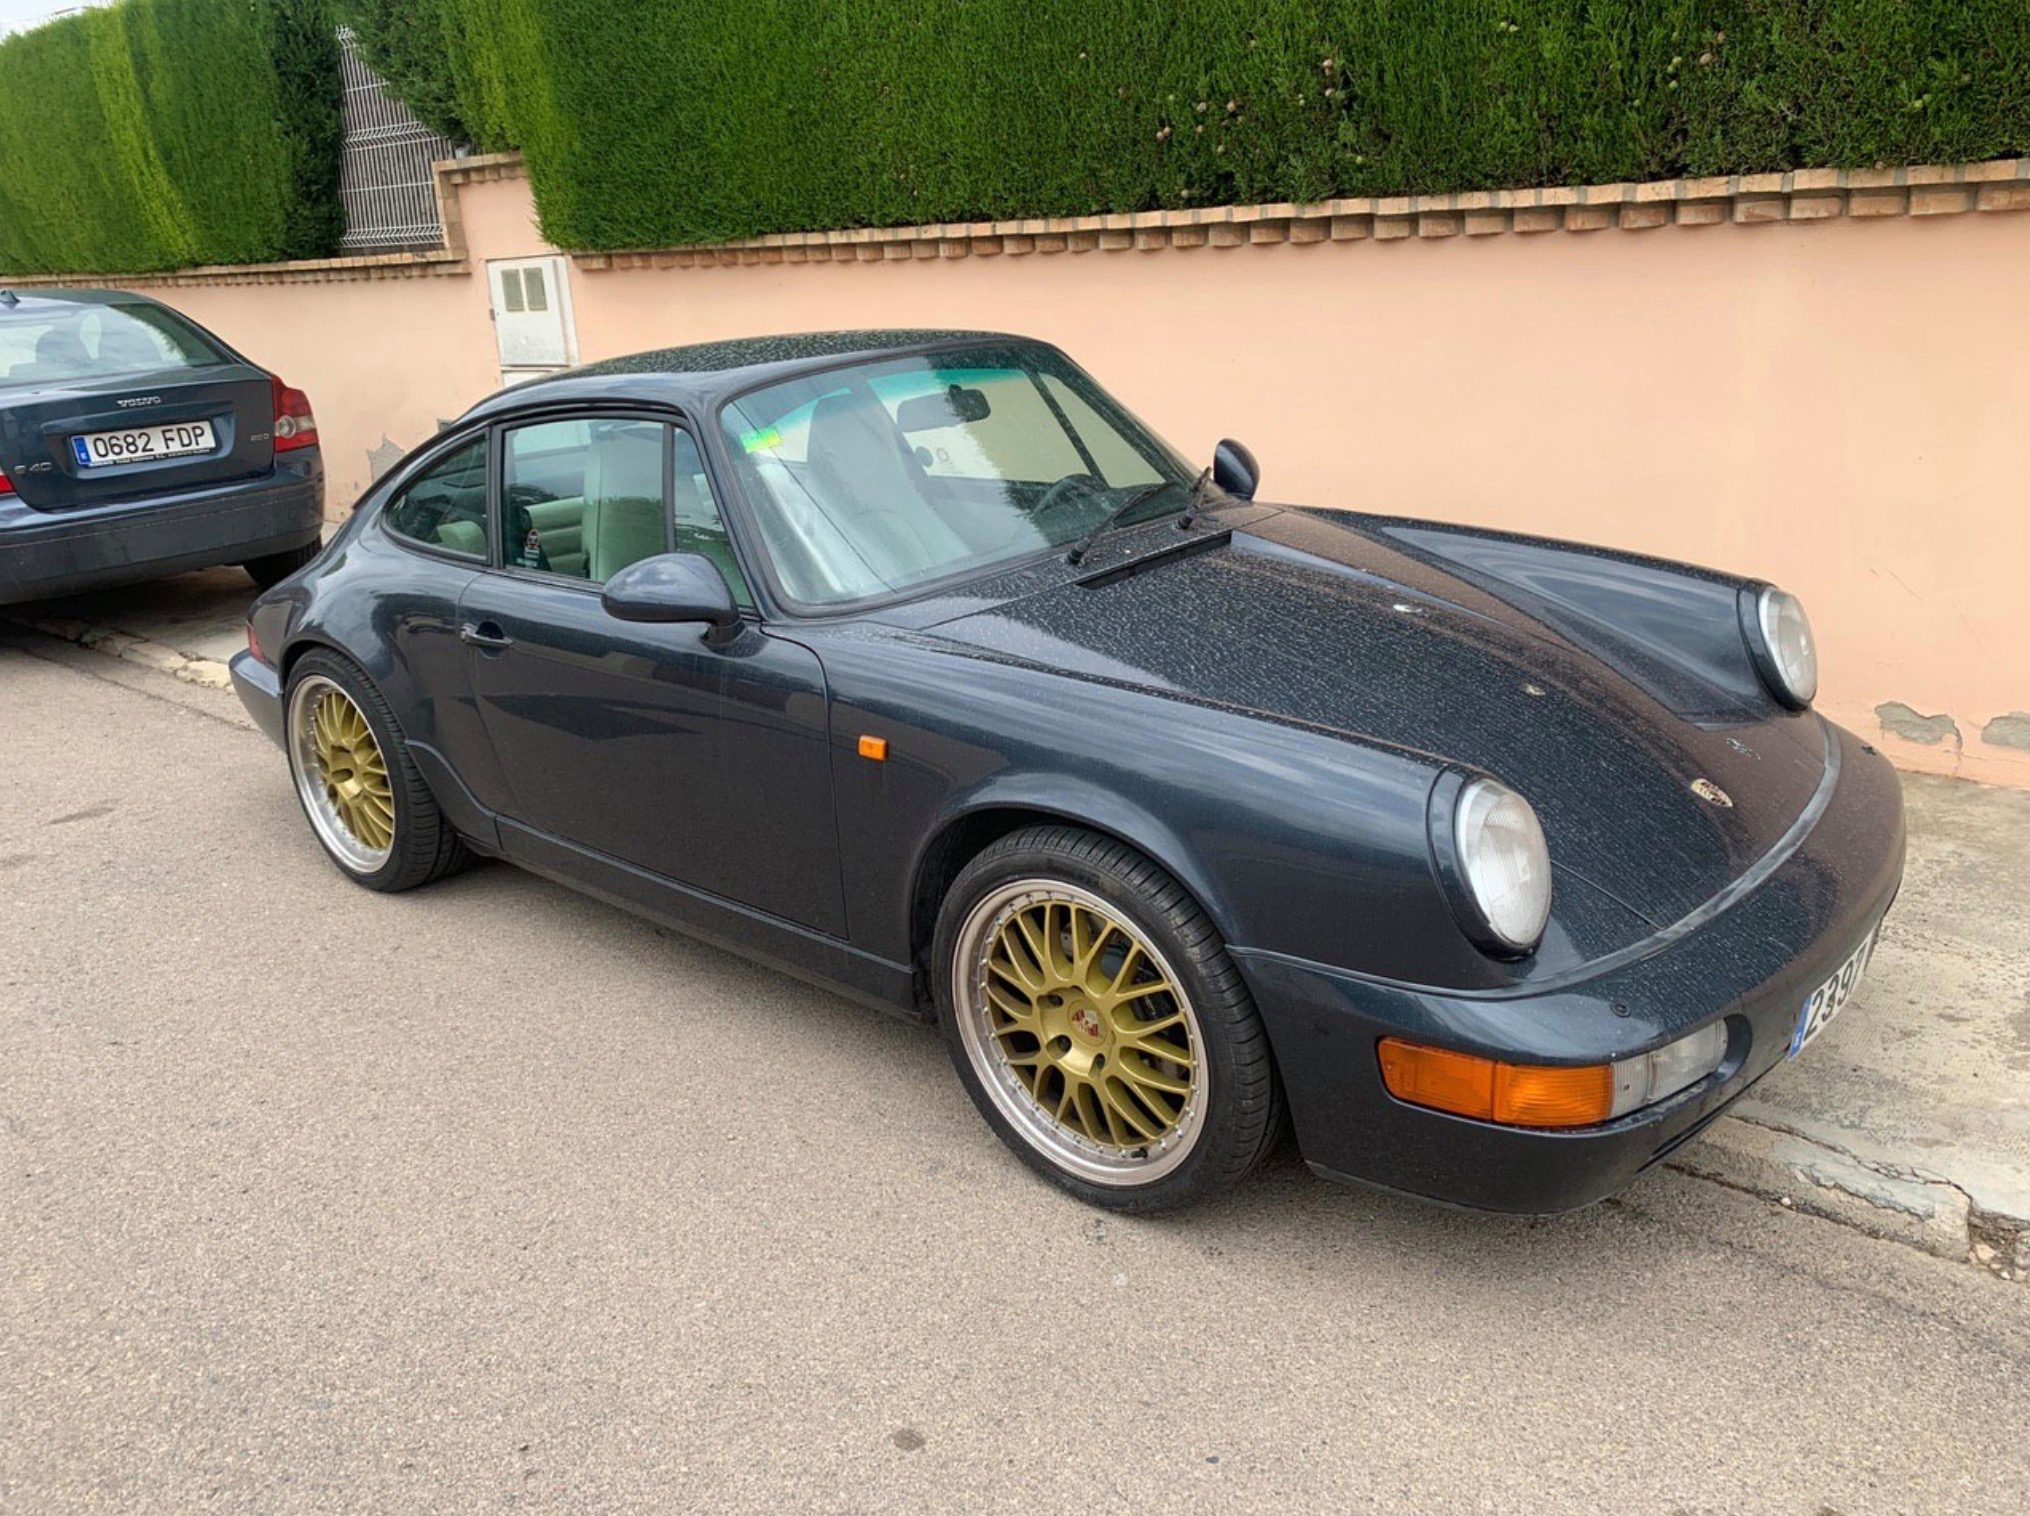 Porsche stolen caught on Sentry Mode found